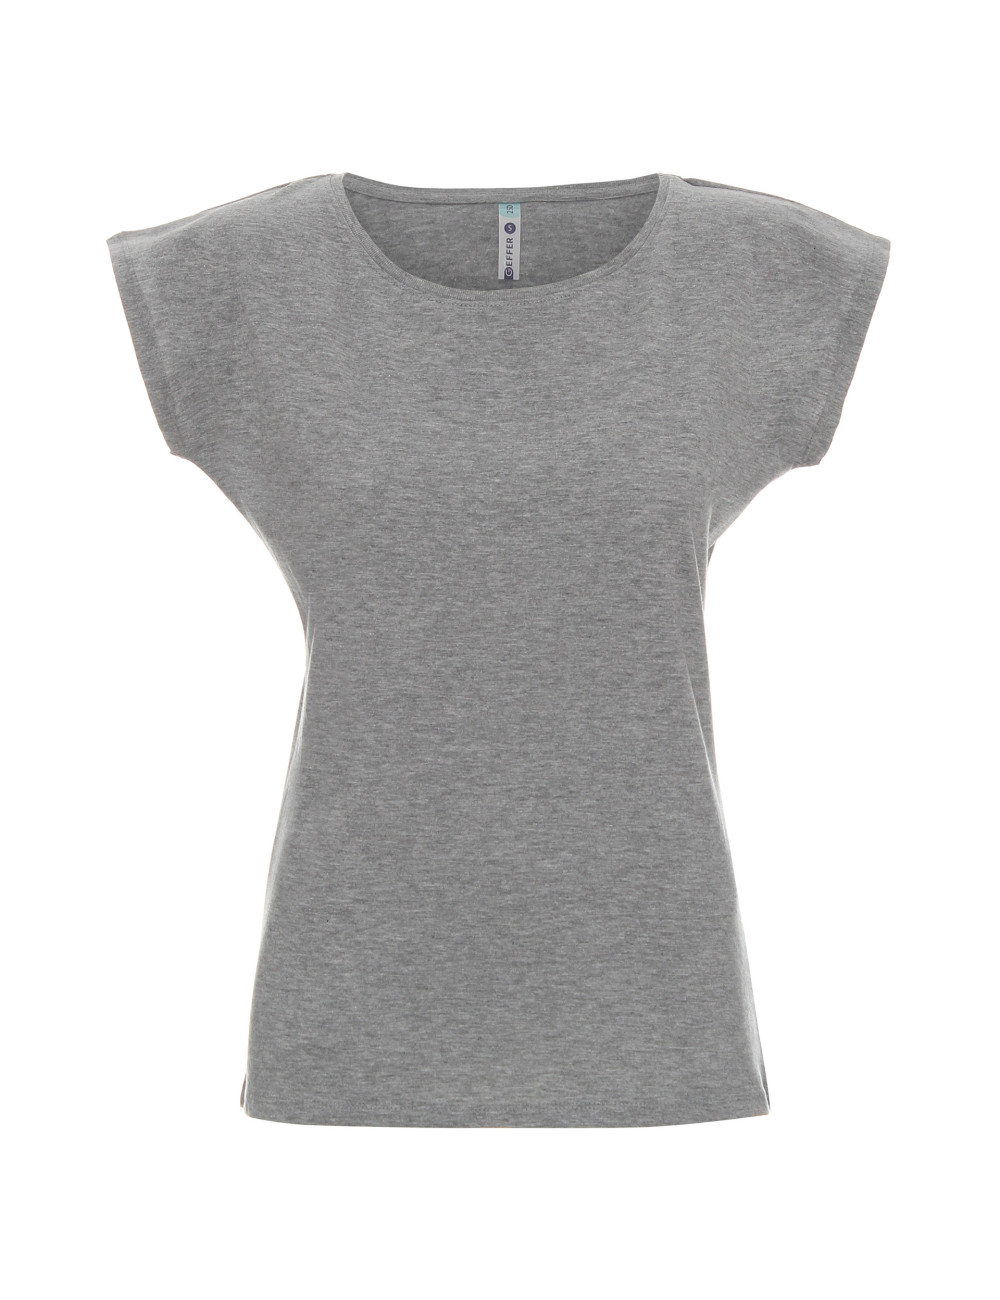 T-shirt women 250 light gray melange Geffer